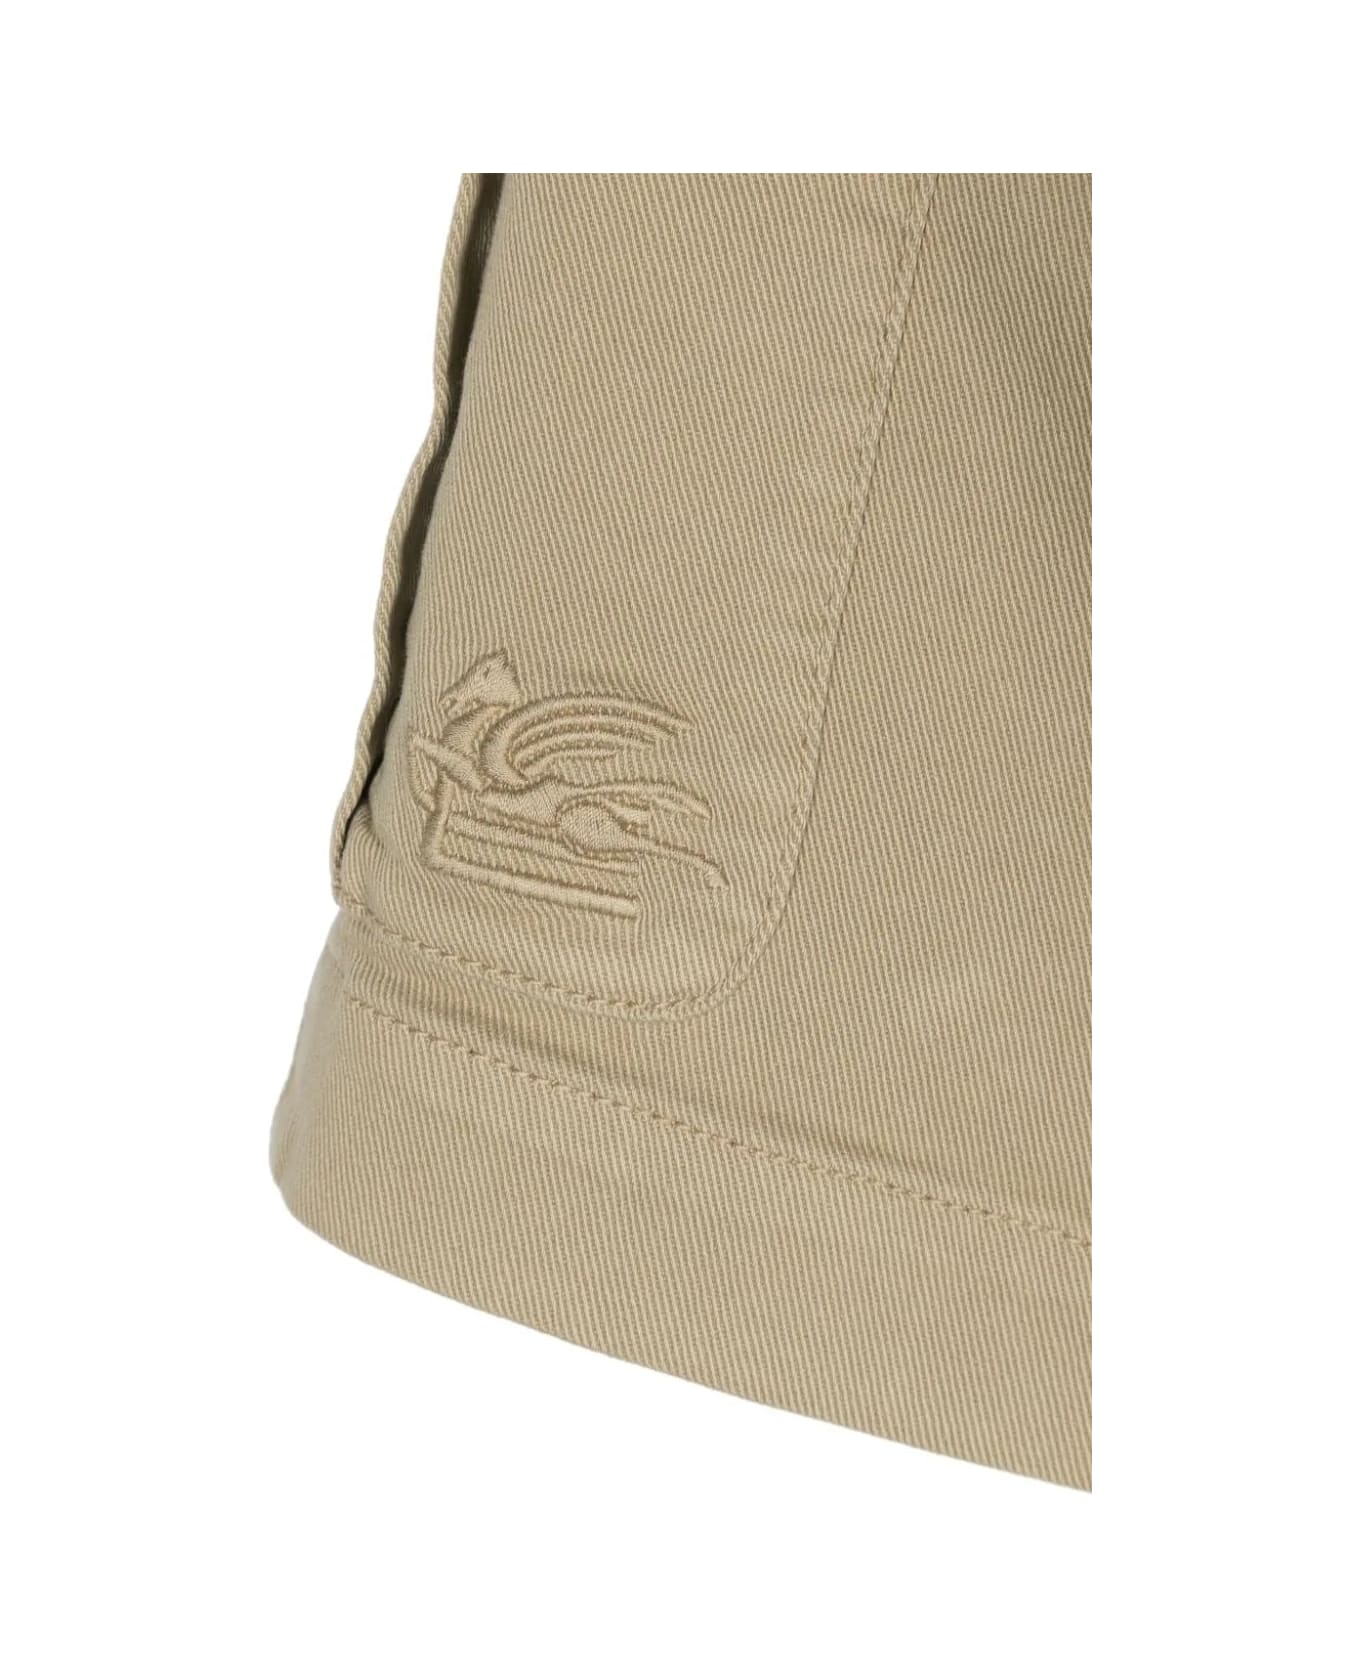 Etro Beige Cargo Shorts With Logo - Brown